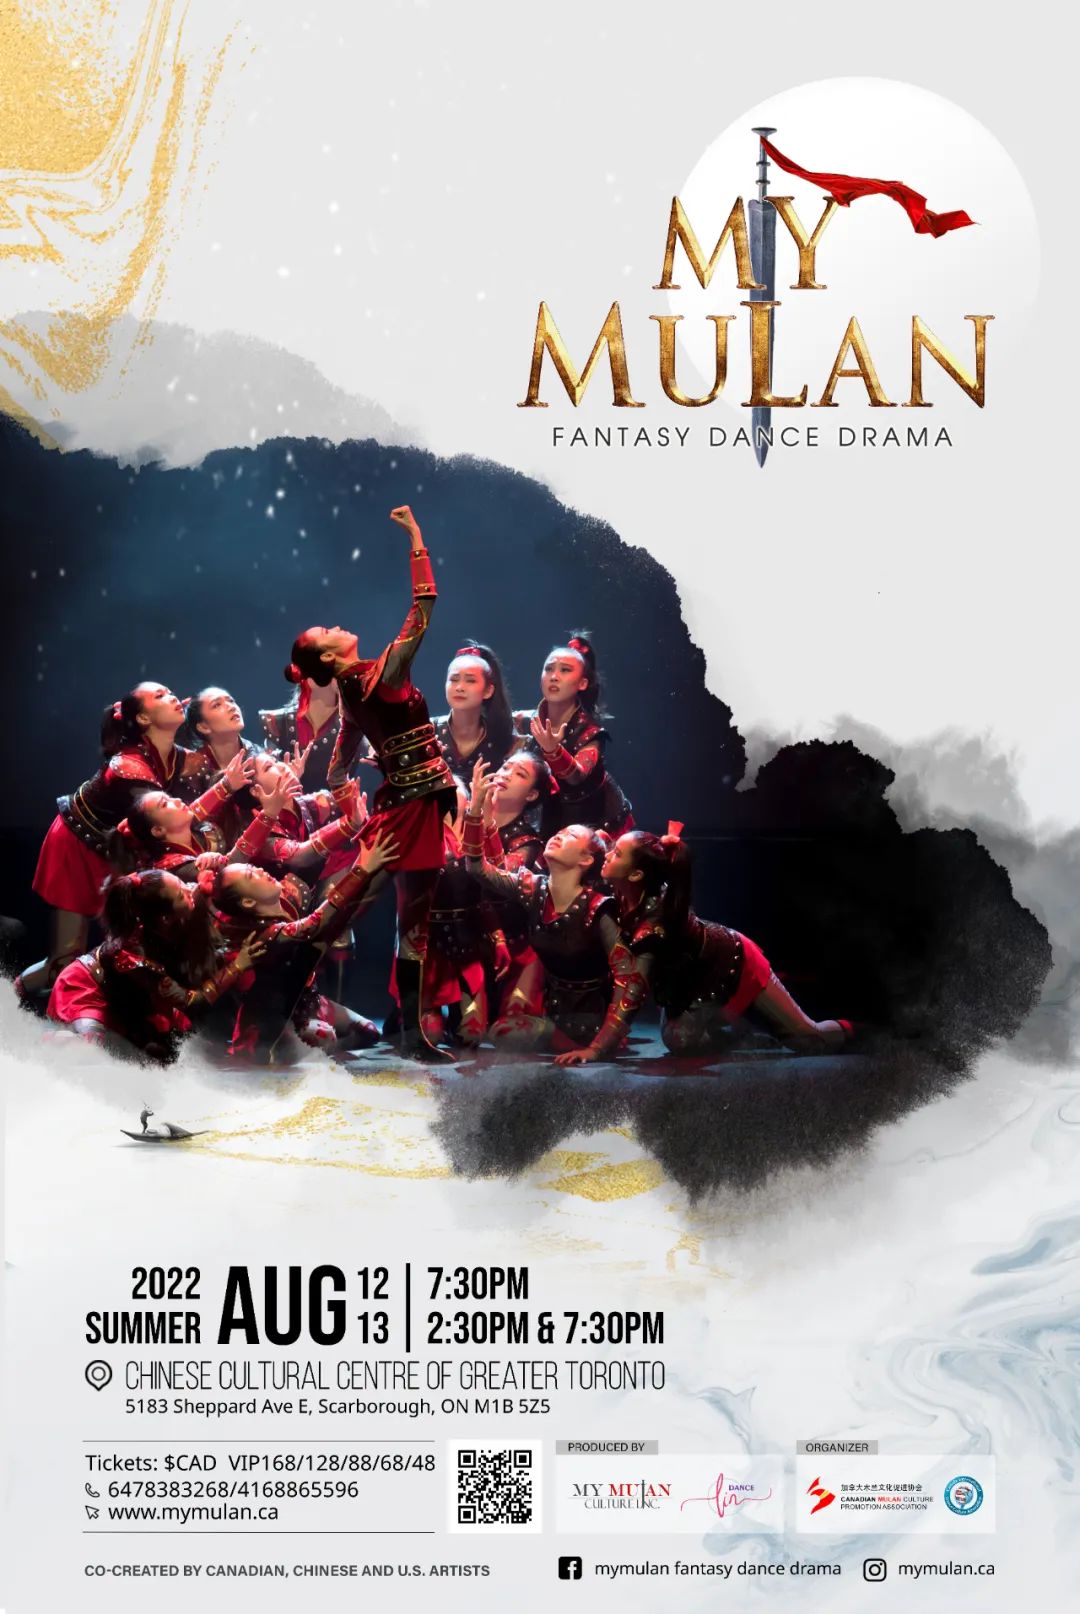 让男孩也着迷的《My Mulan》到底有什么魔力？